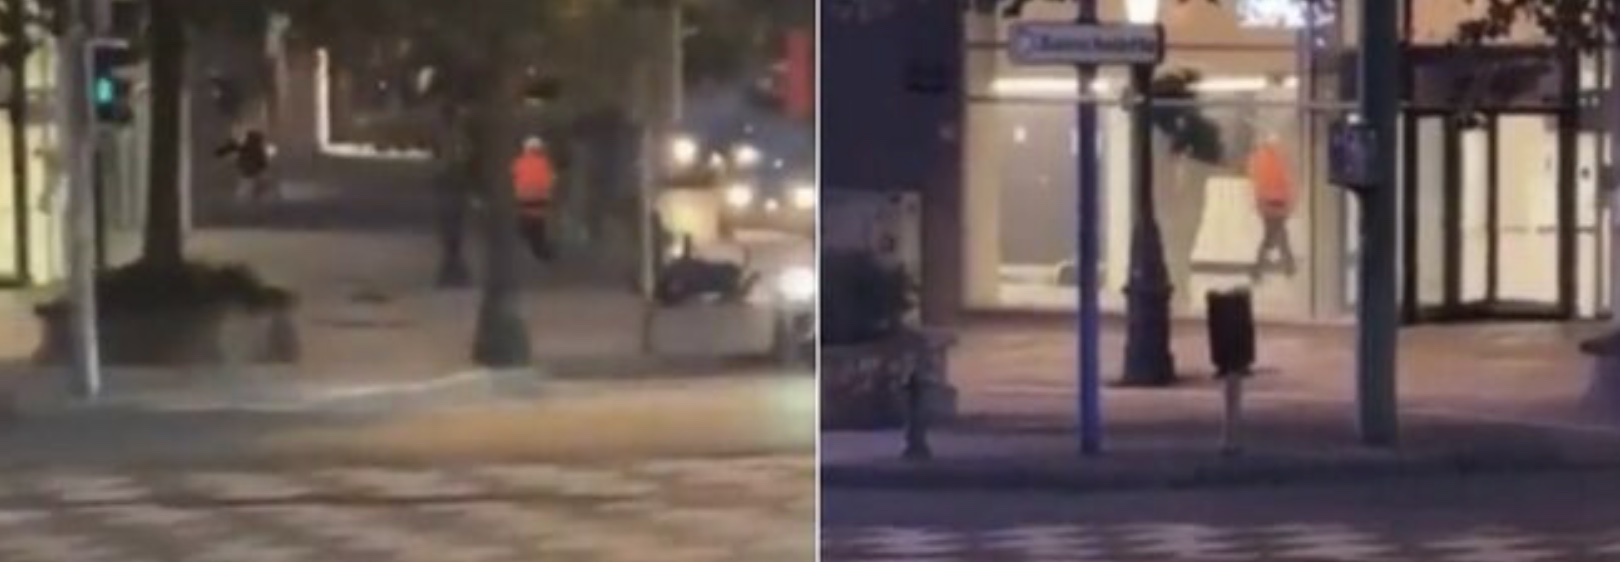 Strzelanina w Brukseli, dwie osoby nie żyją, a jedna została ranna: podążamy śladem terrorystów